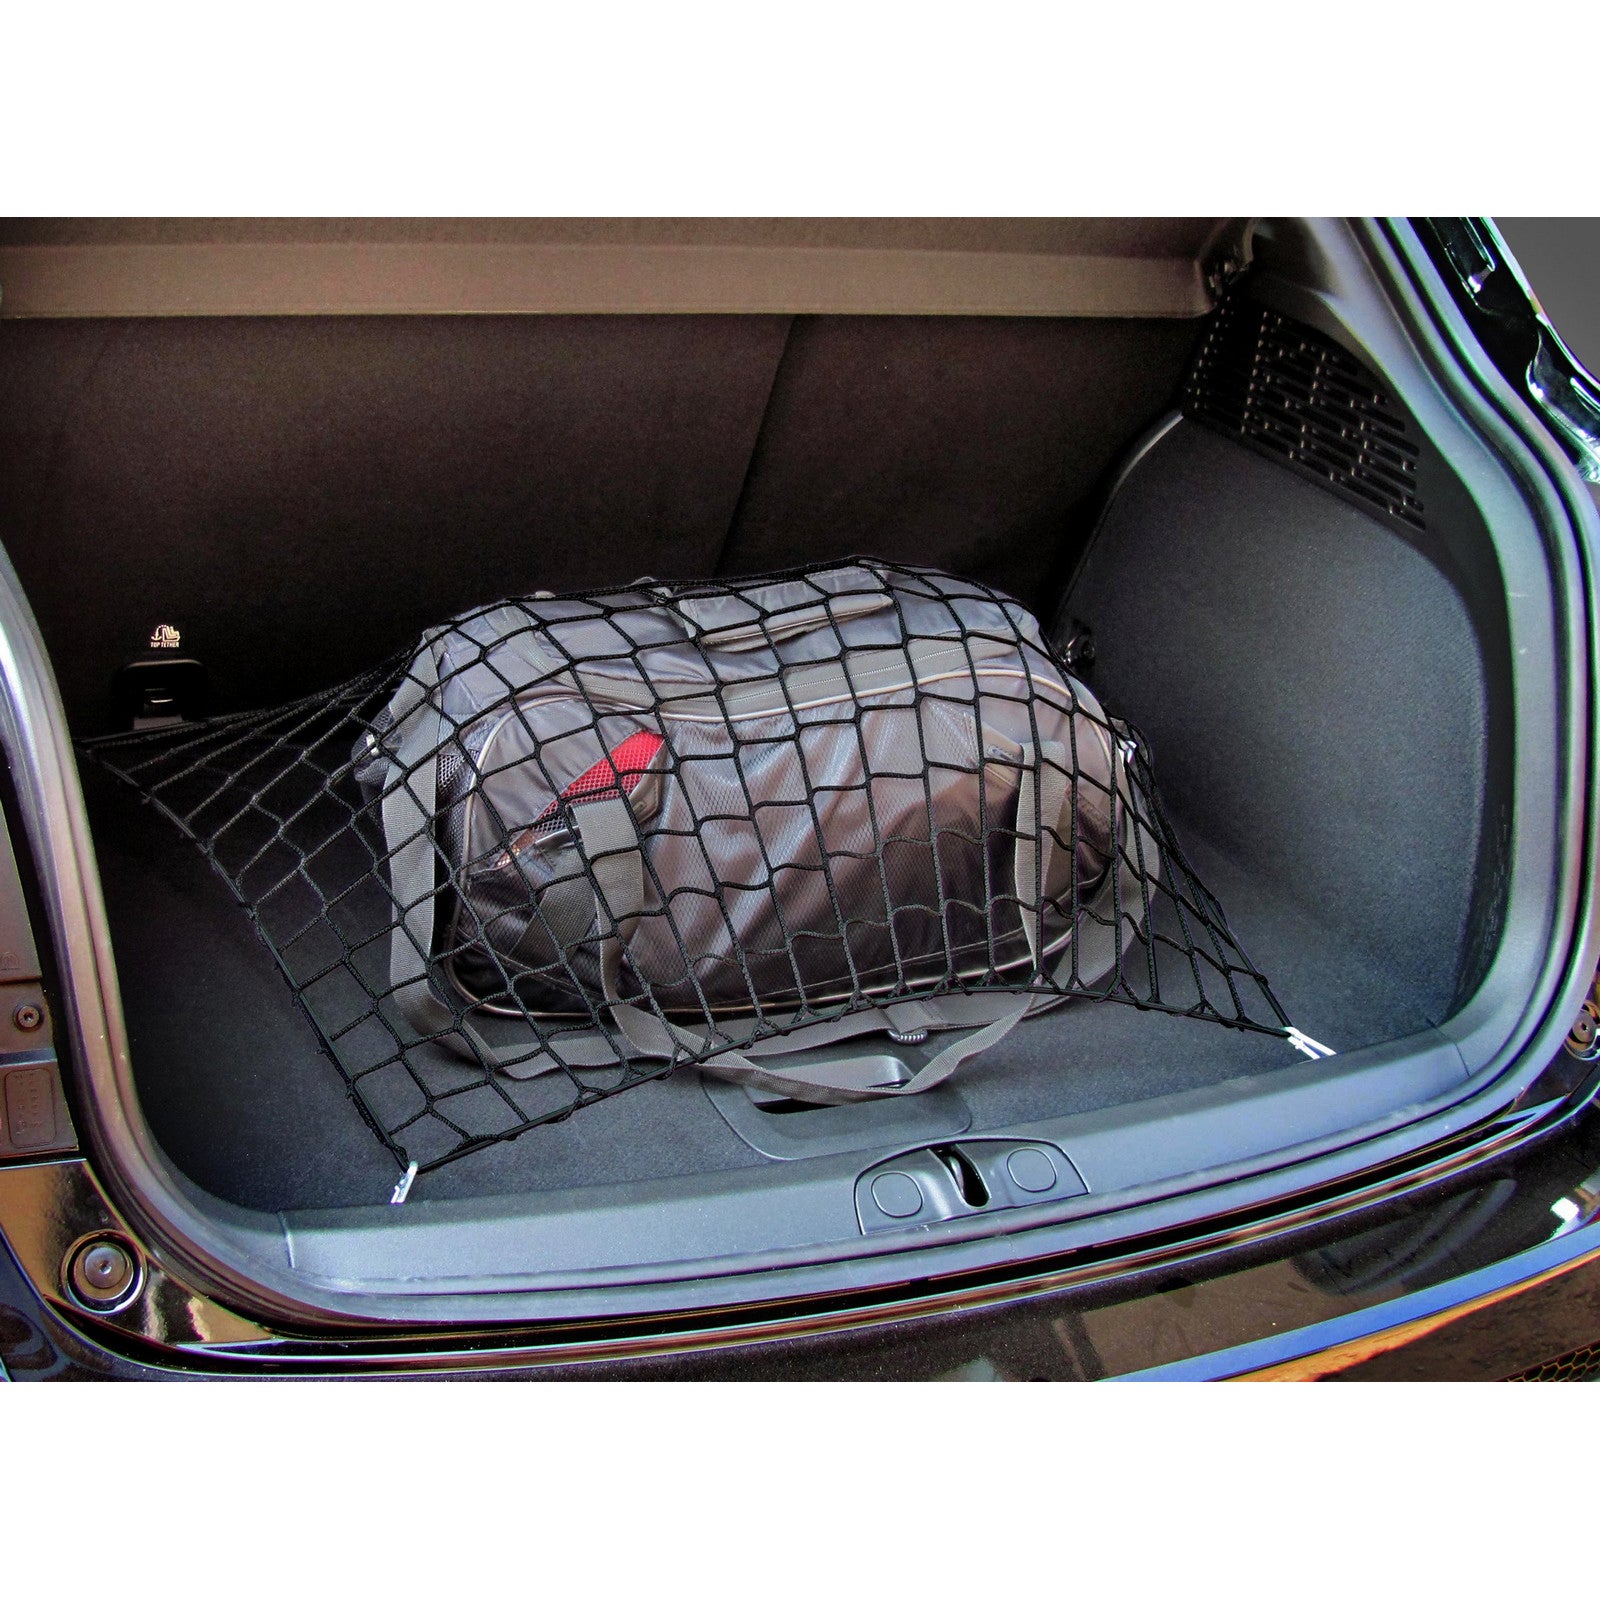 Autosiatki Kofferraumbodennetz Netz Gepäcknetz für BMW X5 E70 2006